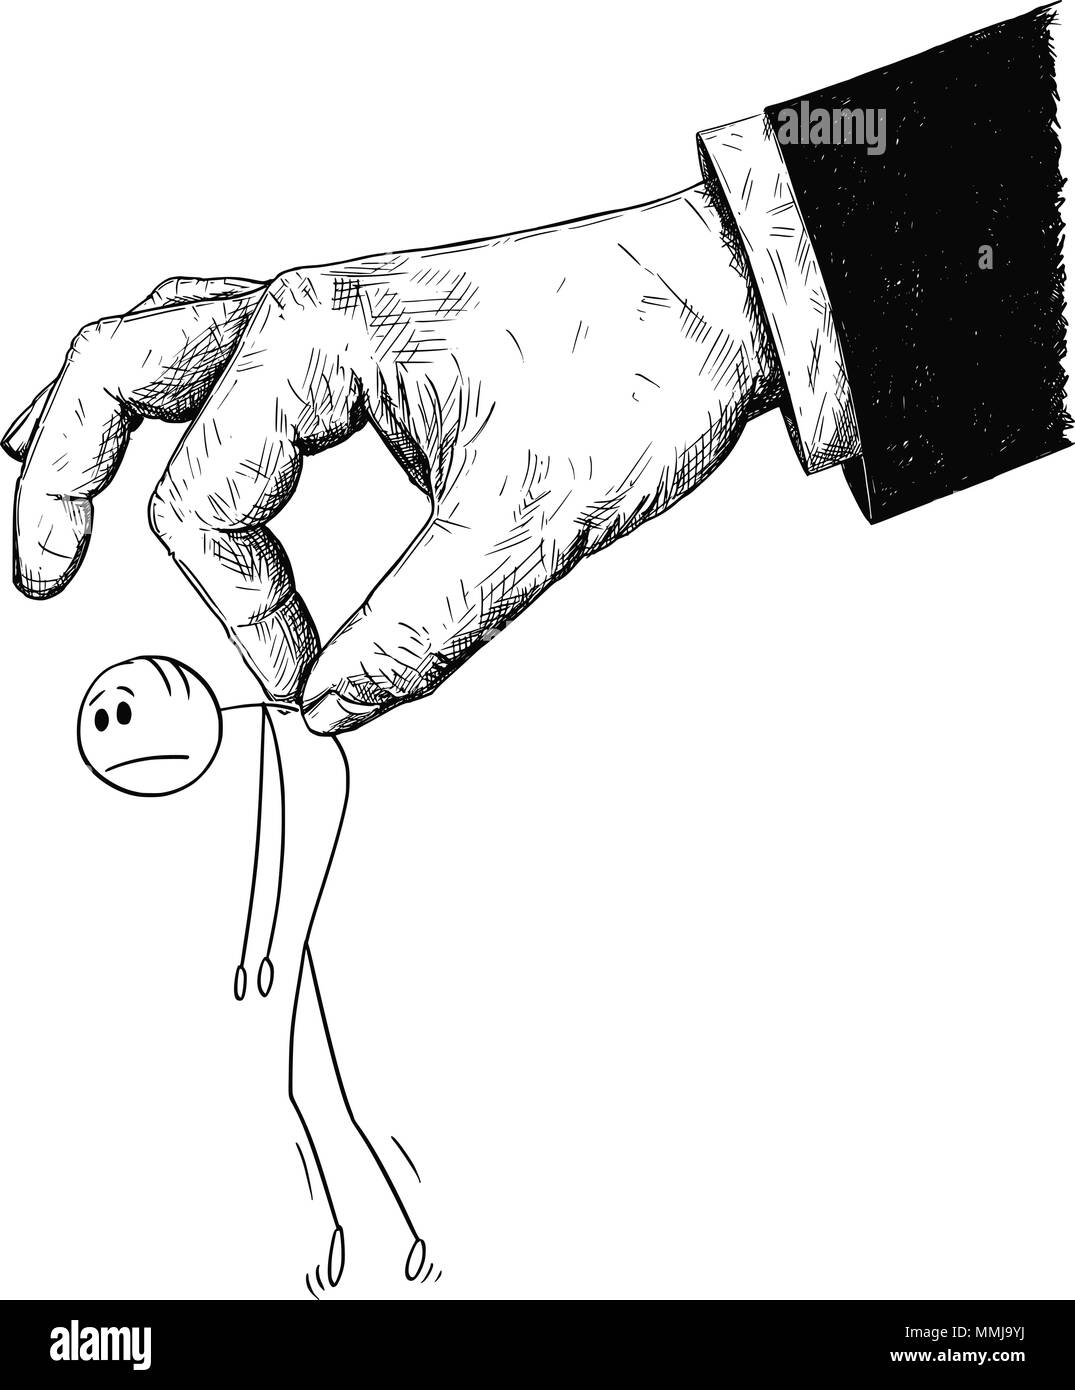 Caricature de l'homme ou homme déplacé ou manipulé par la main géante Illustration de Vecteur